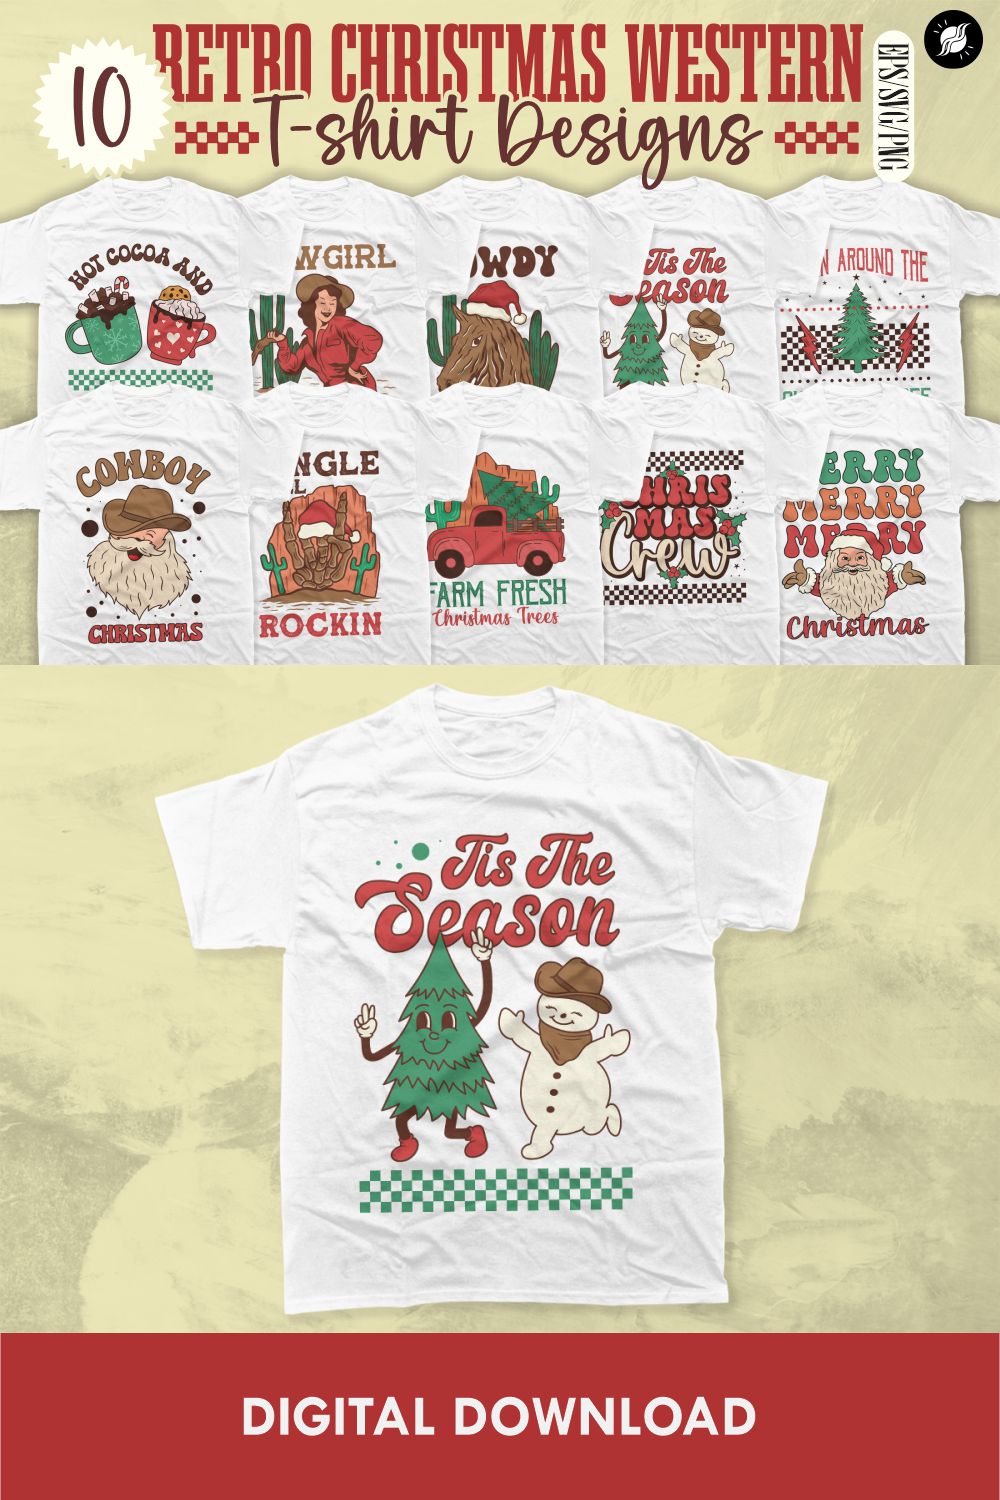 Retro Christmas Western Sublimation T-shirt Designs Bundle pinterest preview image.